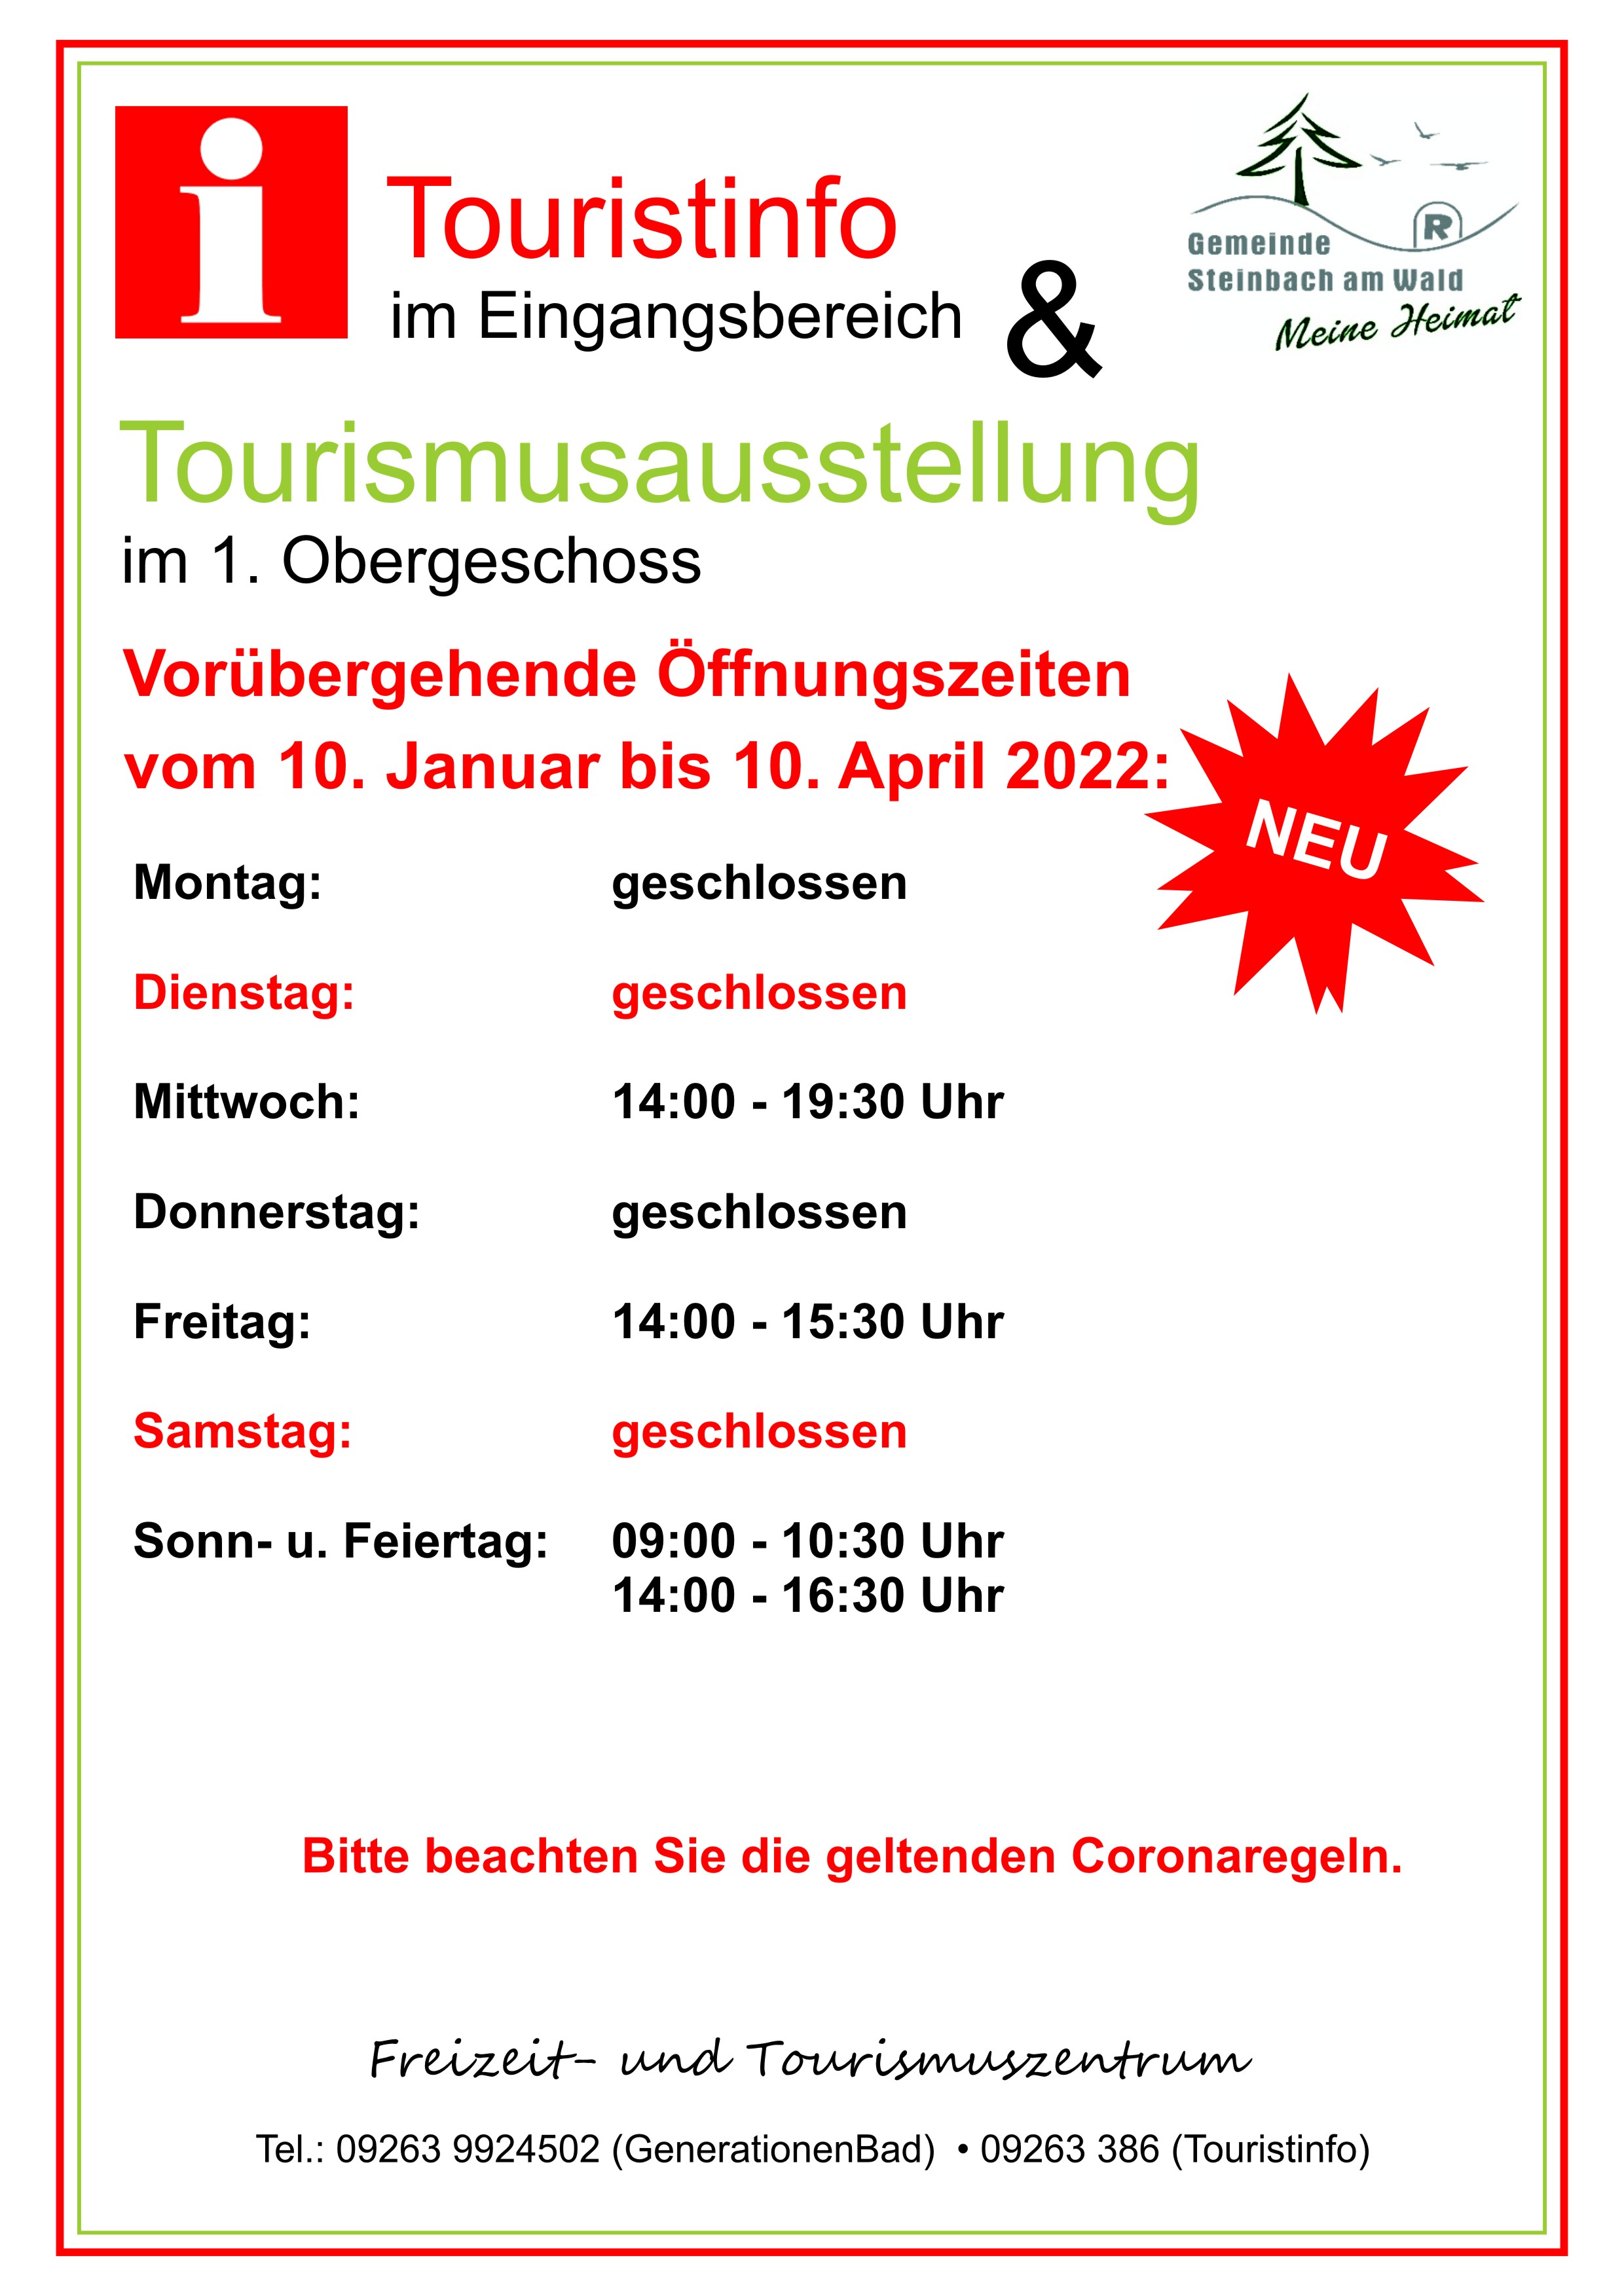 Geänderte Öffungszeiten der Touristinformation und Tourismusausstellung ab 10. Januar bis 10. April 2022